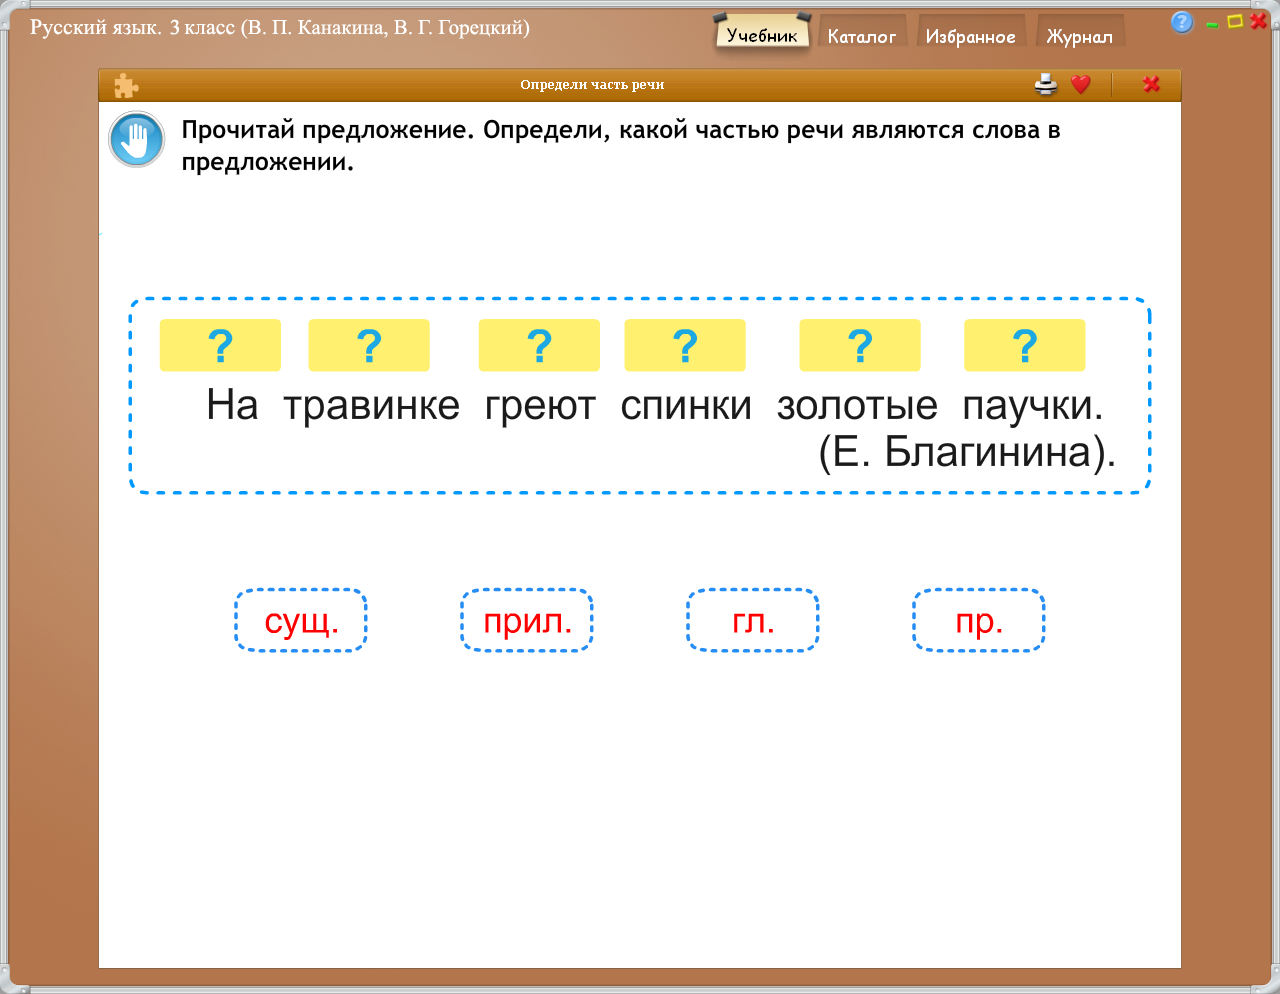 Проект урока русского языка для 3 класса « Части речи»